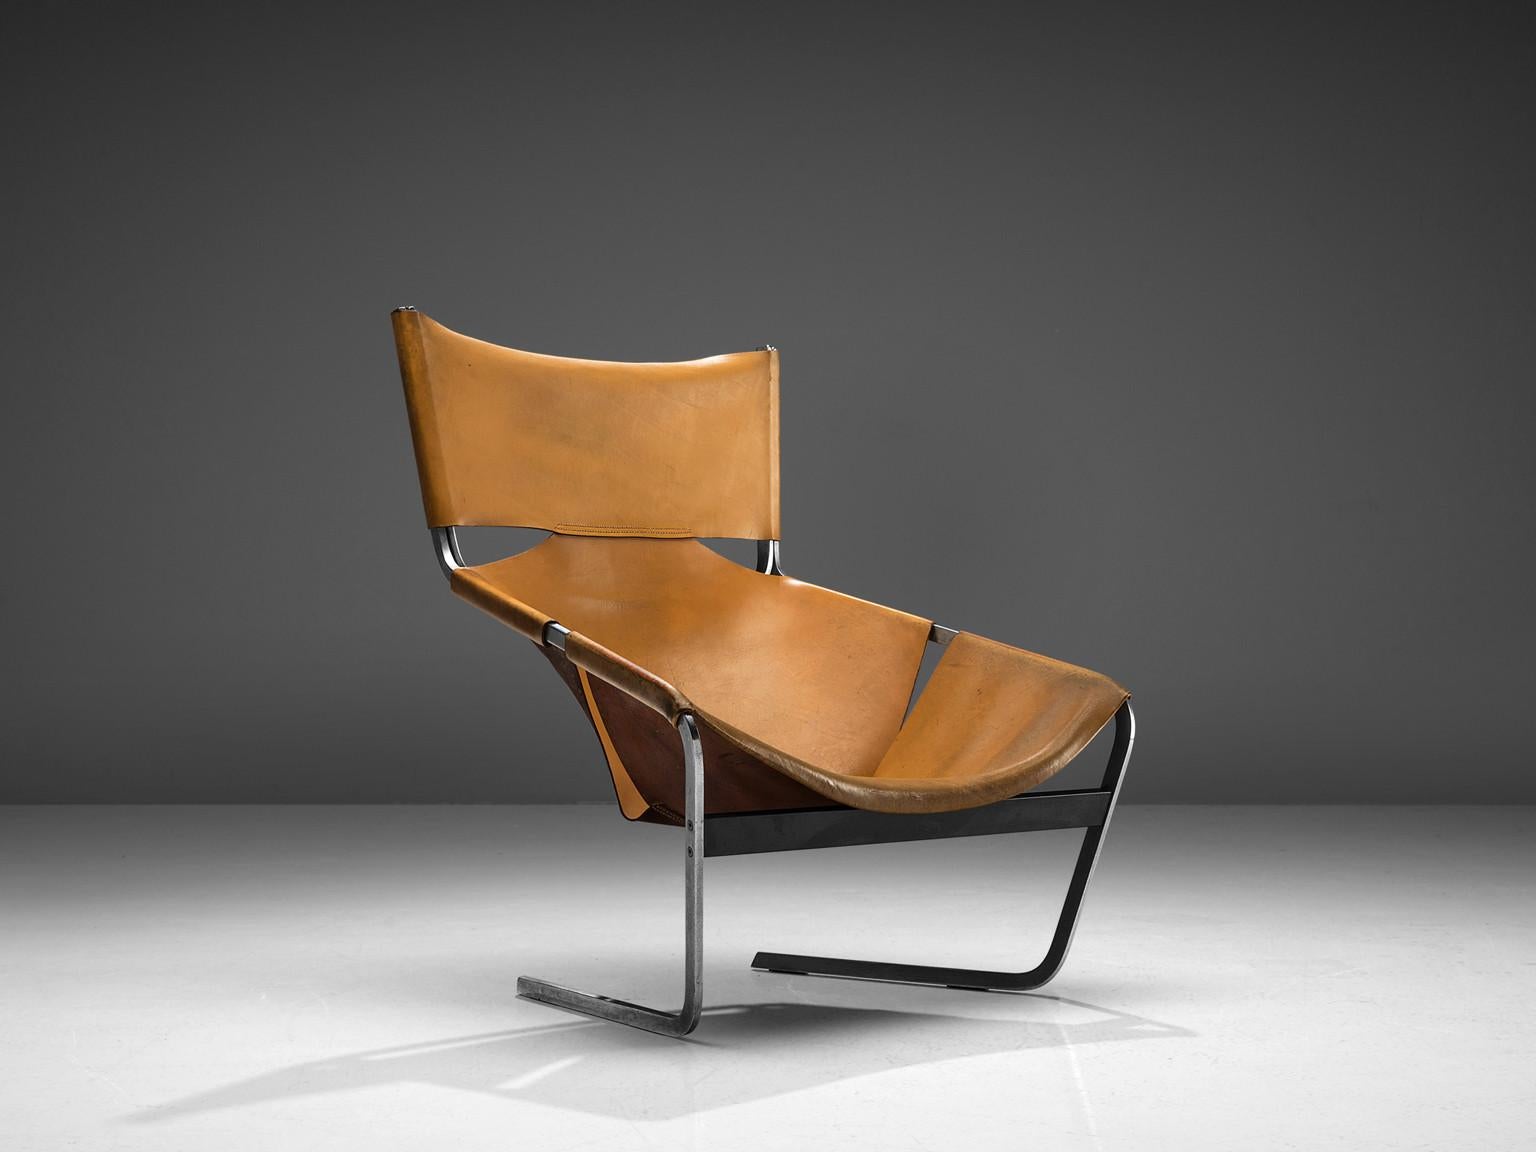 Pierre Paulin für Artifort, Sessel F-444, Metall und cognacfarbenes Leder, Niederlande, um 1962.

Dieser cognacfarbene Ledersessel F-444 wurde 1962 von Pierre Paulin für Artifort entworfen. Dieser Stuhl zeichnet sich durch klare Linien und eine